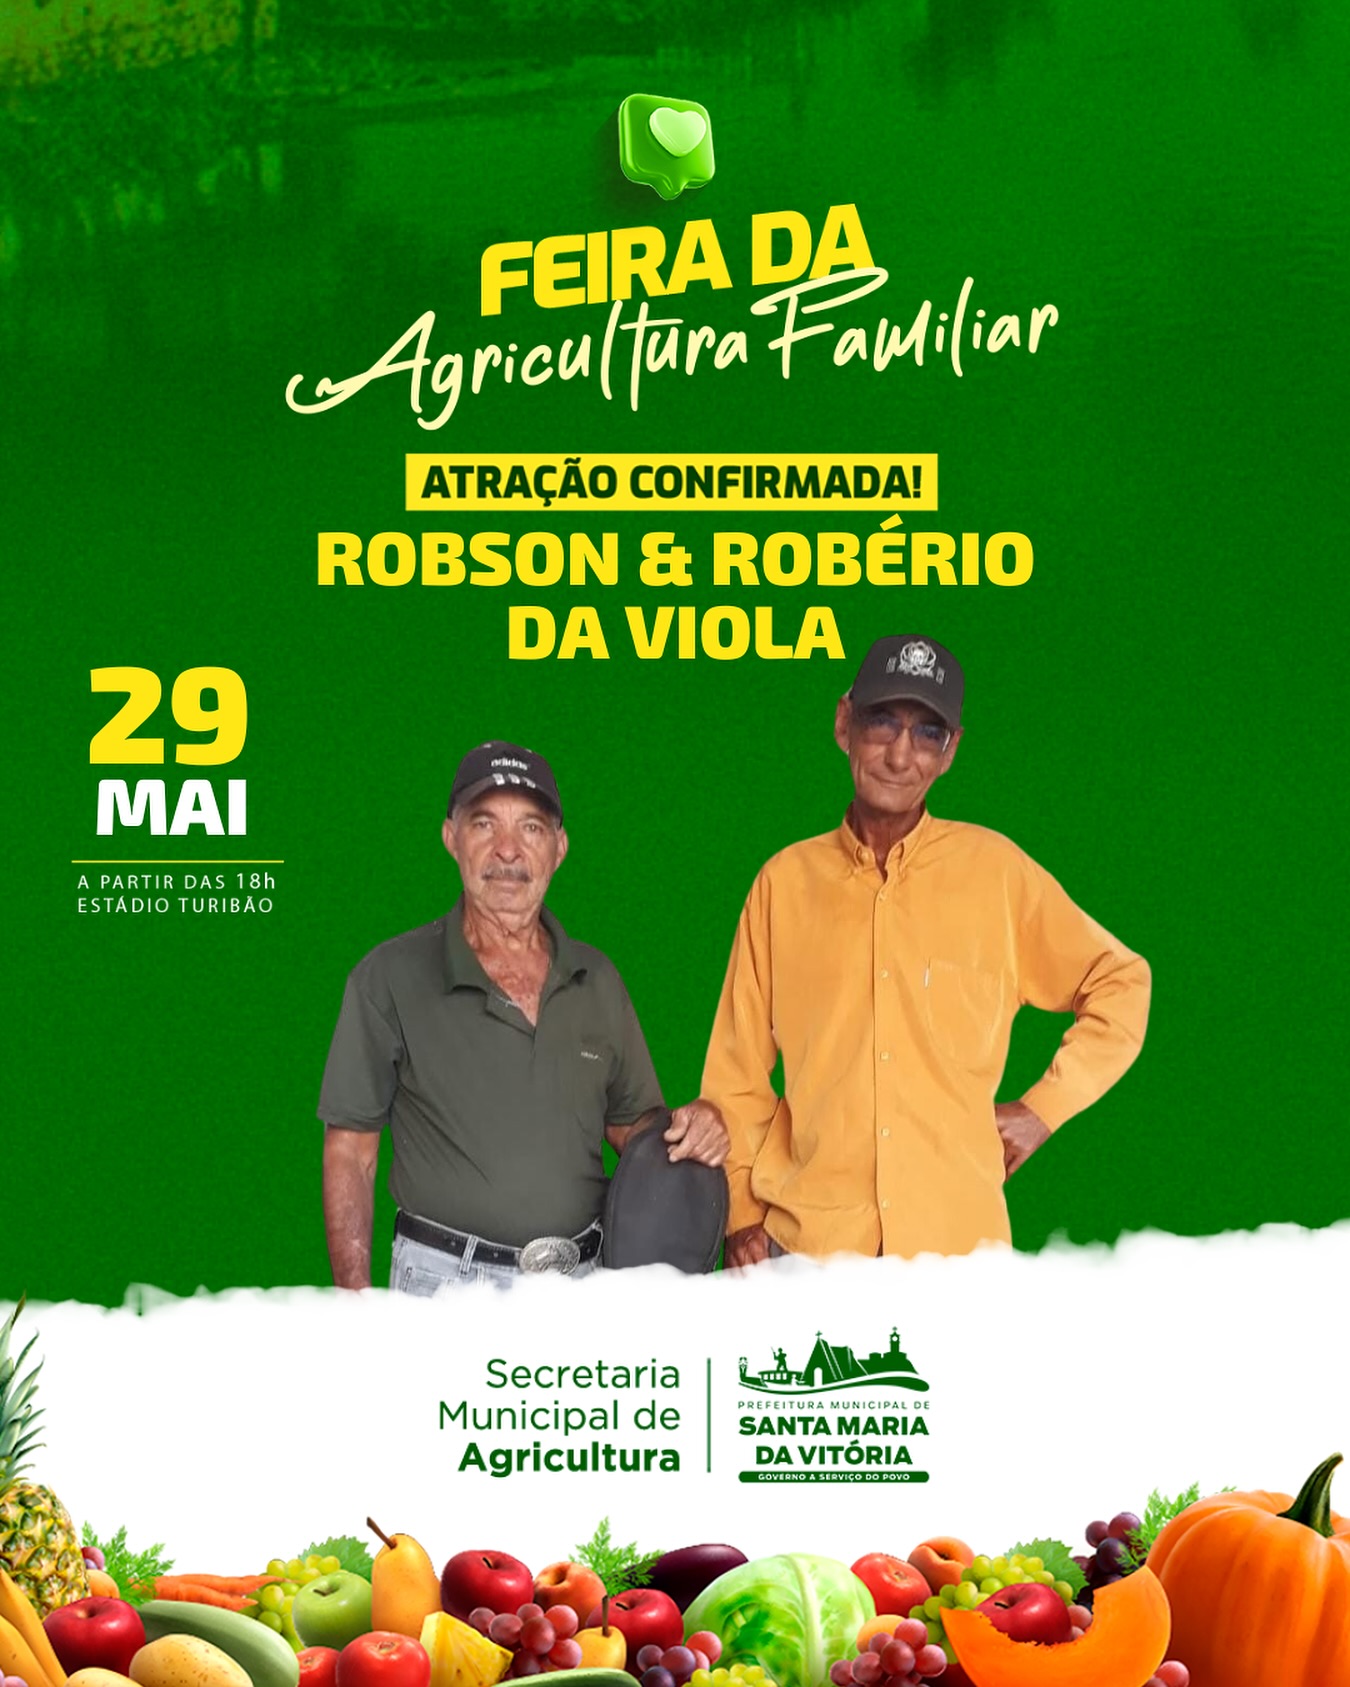 Hoje, às 18h, em frente ao estádio Turibão, a dupla Robson & Robério da Viola vai comandar a festa na Feira da Agricultura Familiar.